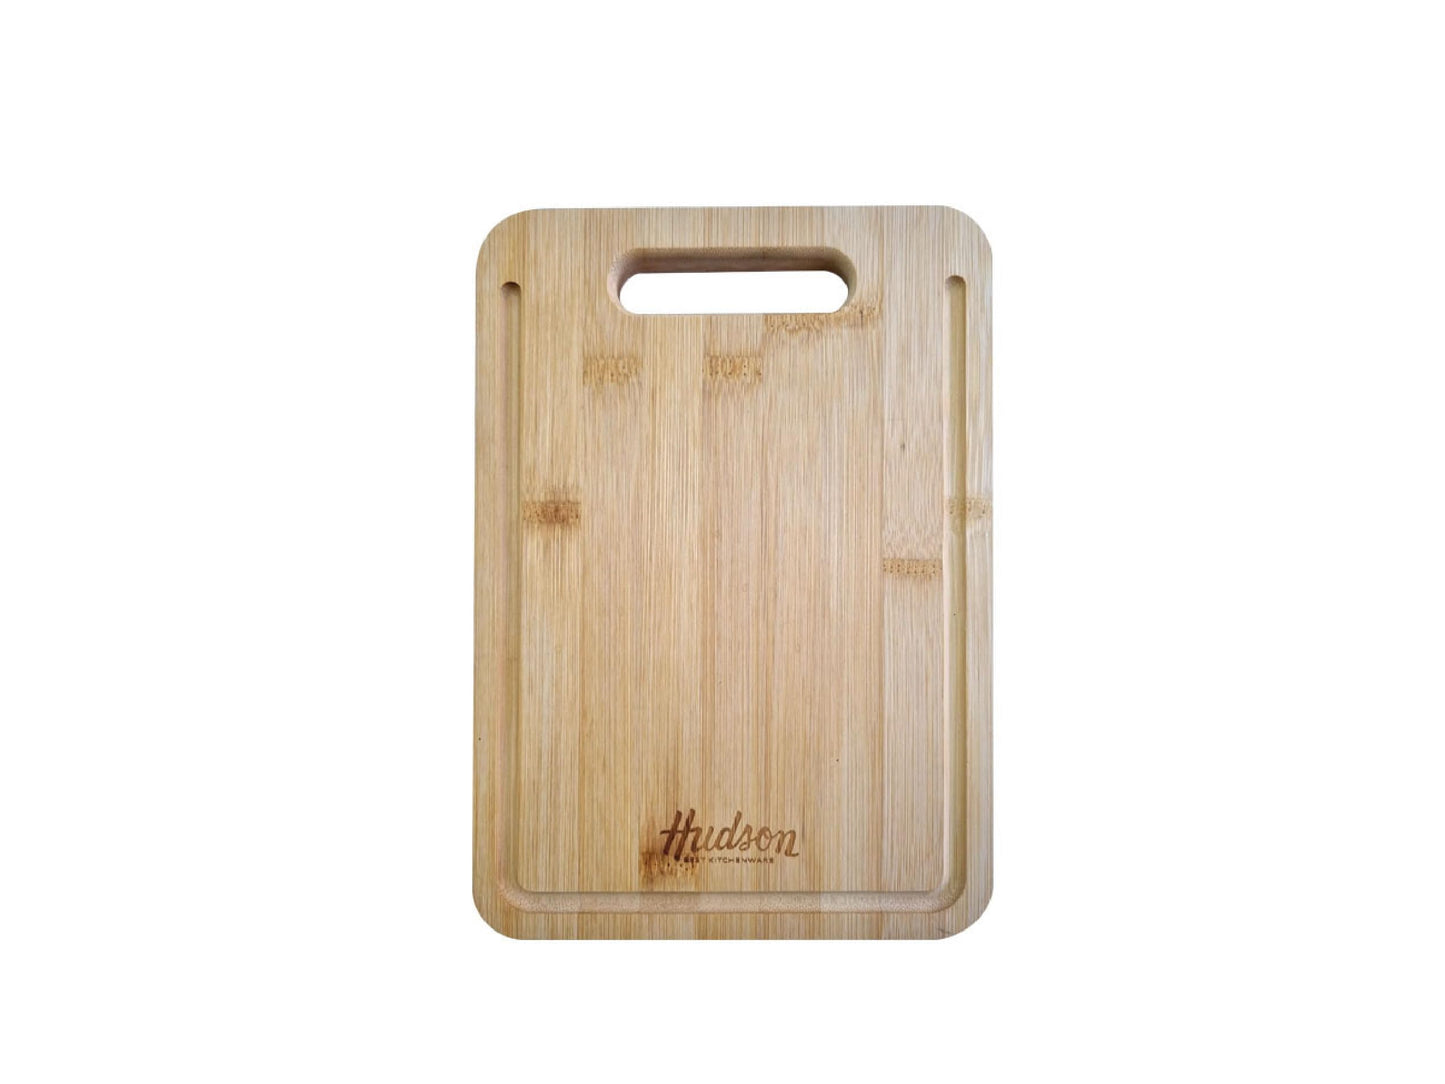 HUDSON Bamboo Cutting Board for Kitchen 10.6x5.11 inch